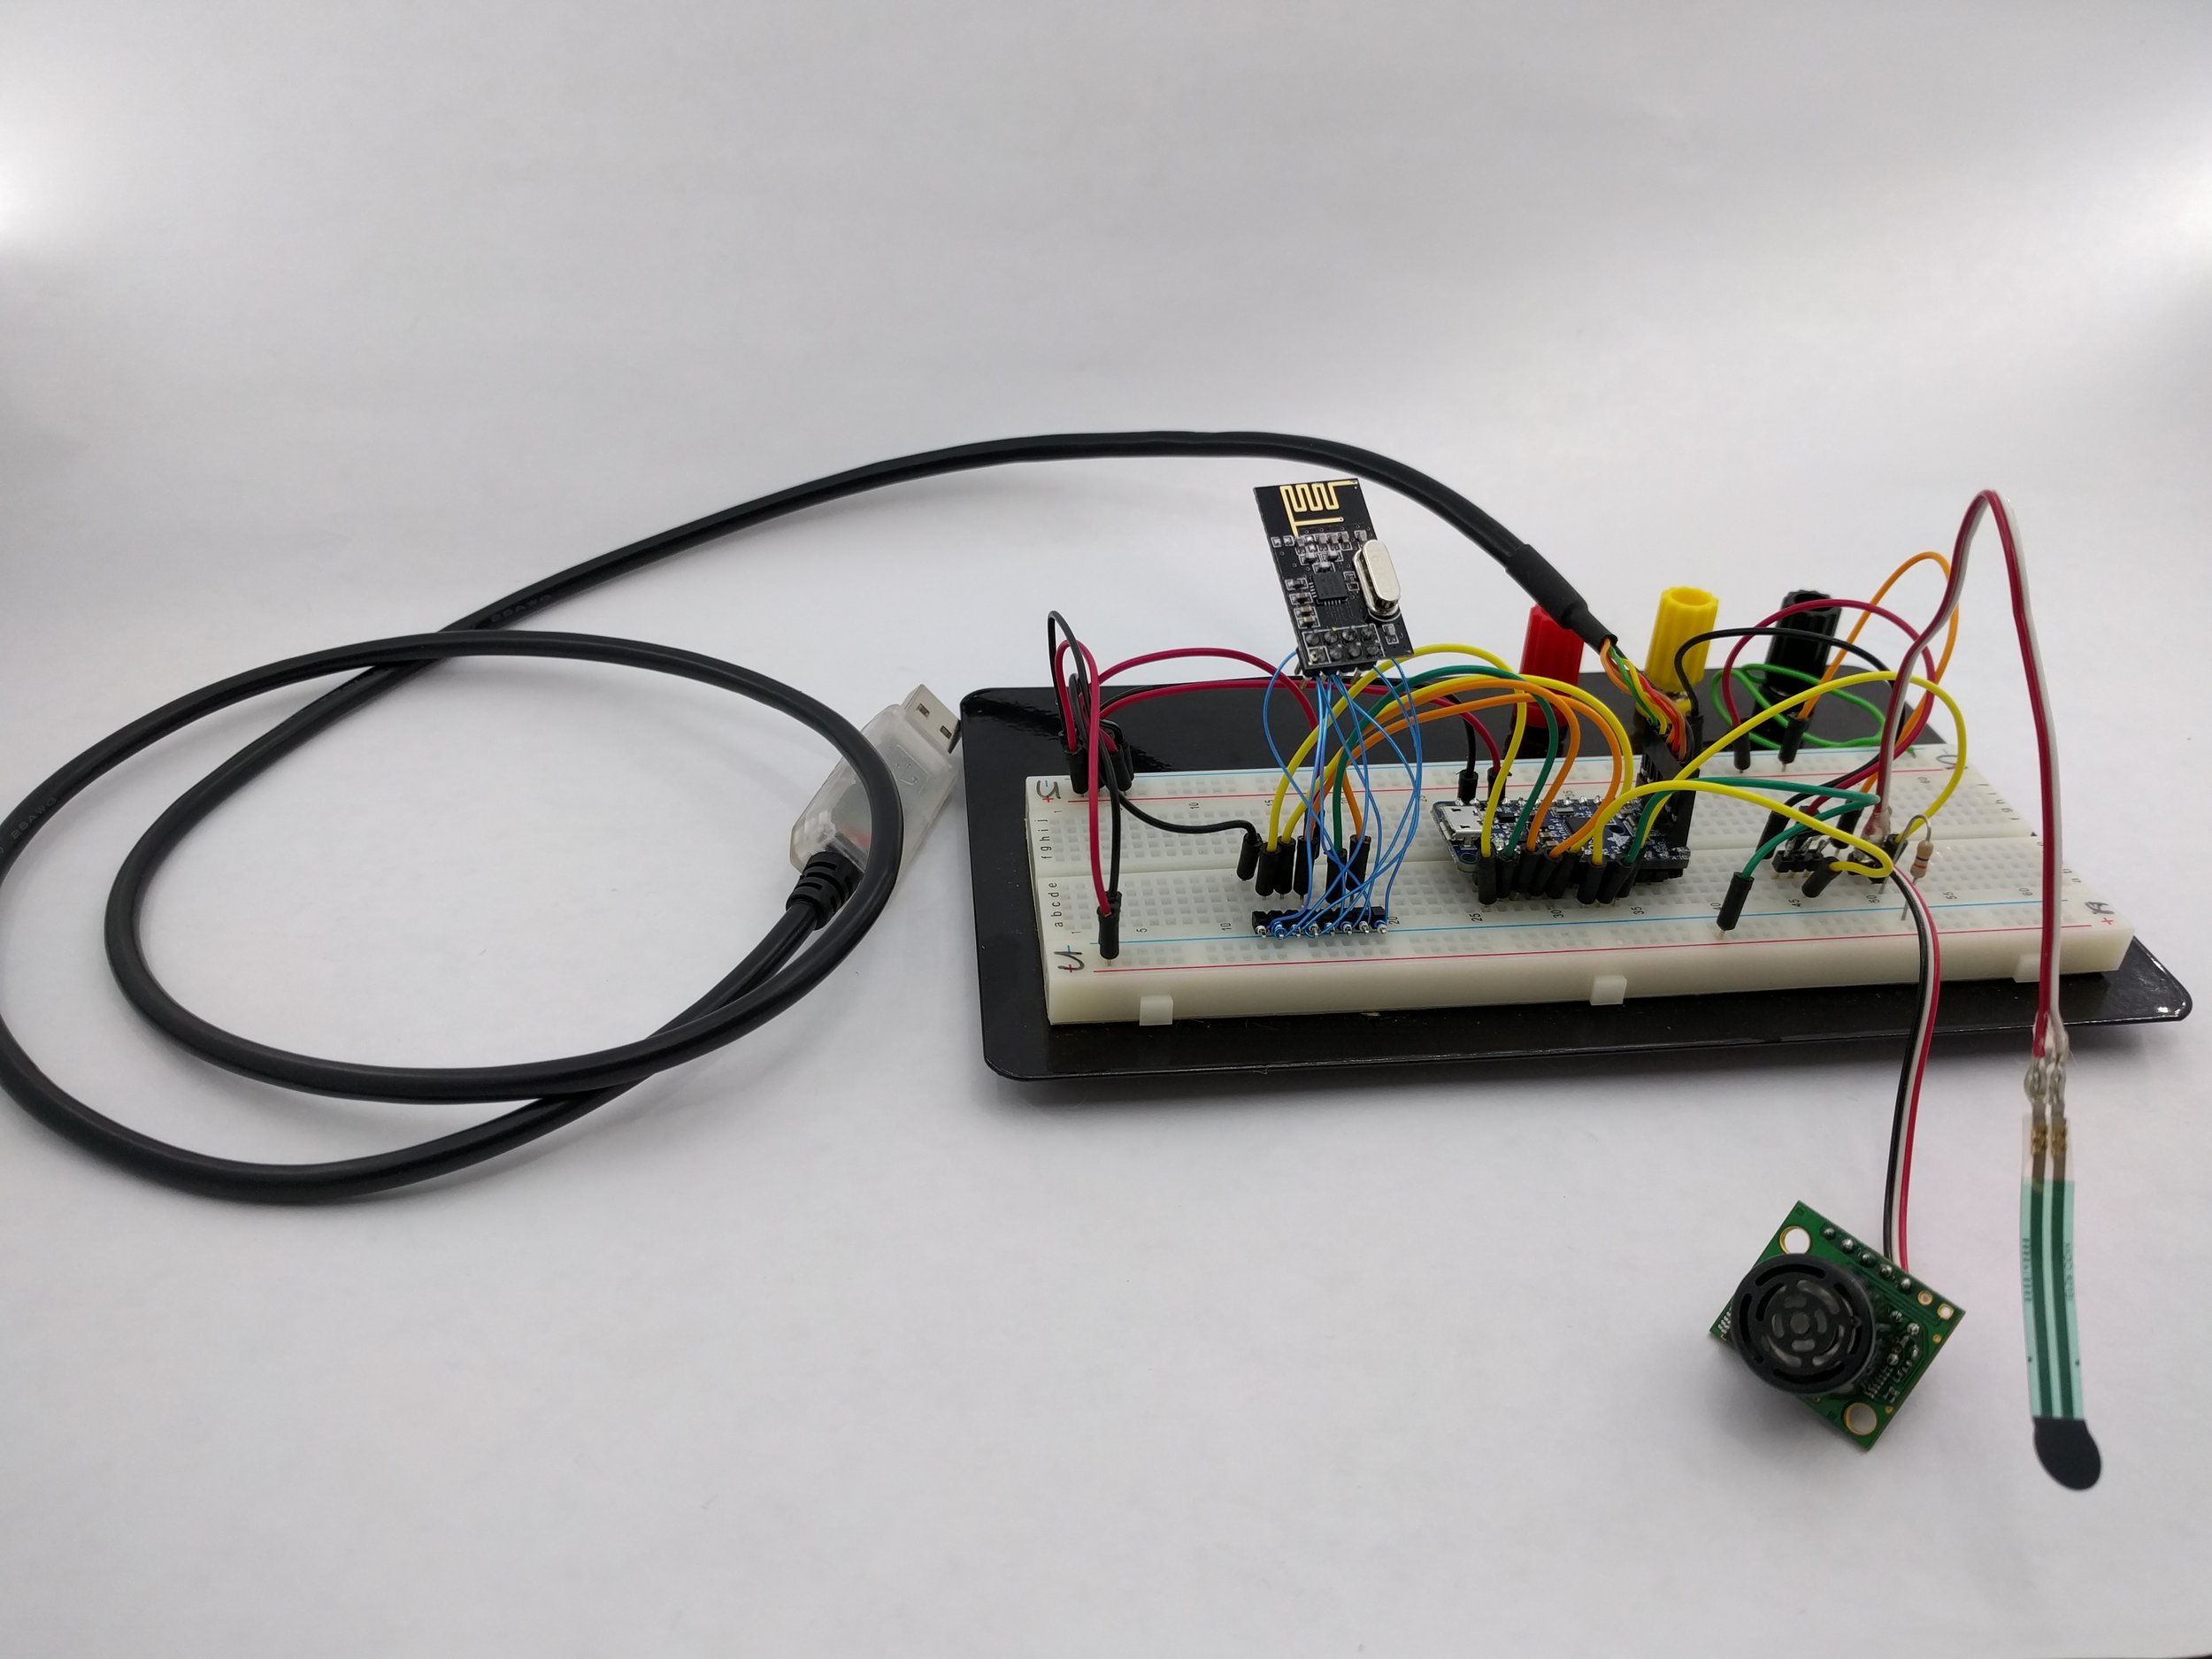 Transmitter prototype with Adafruit Pro Trinket 3V, nRF24L01+, with Sonar and FSR sensors.